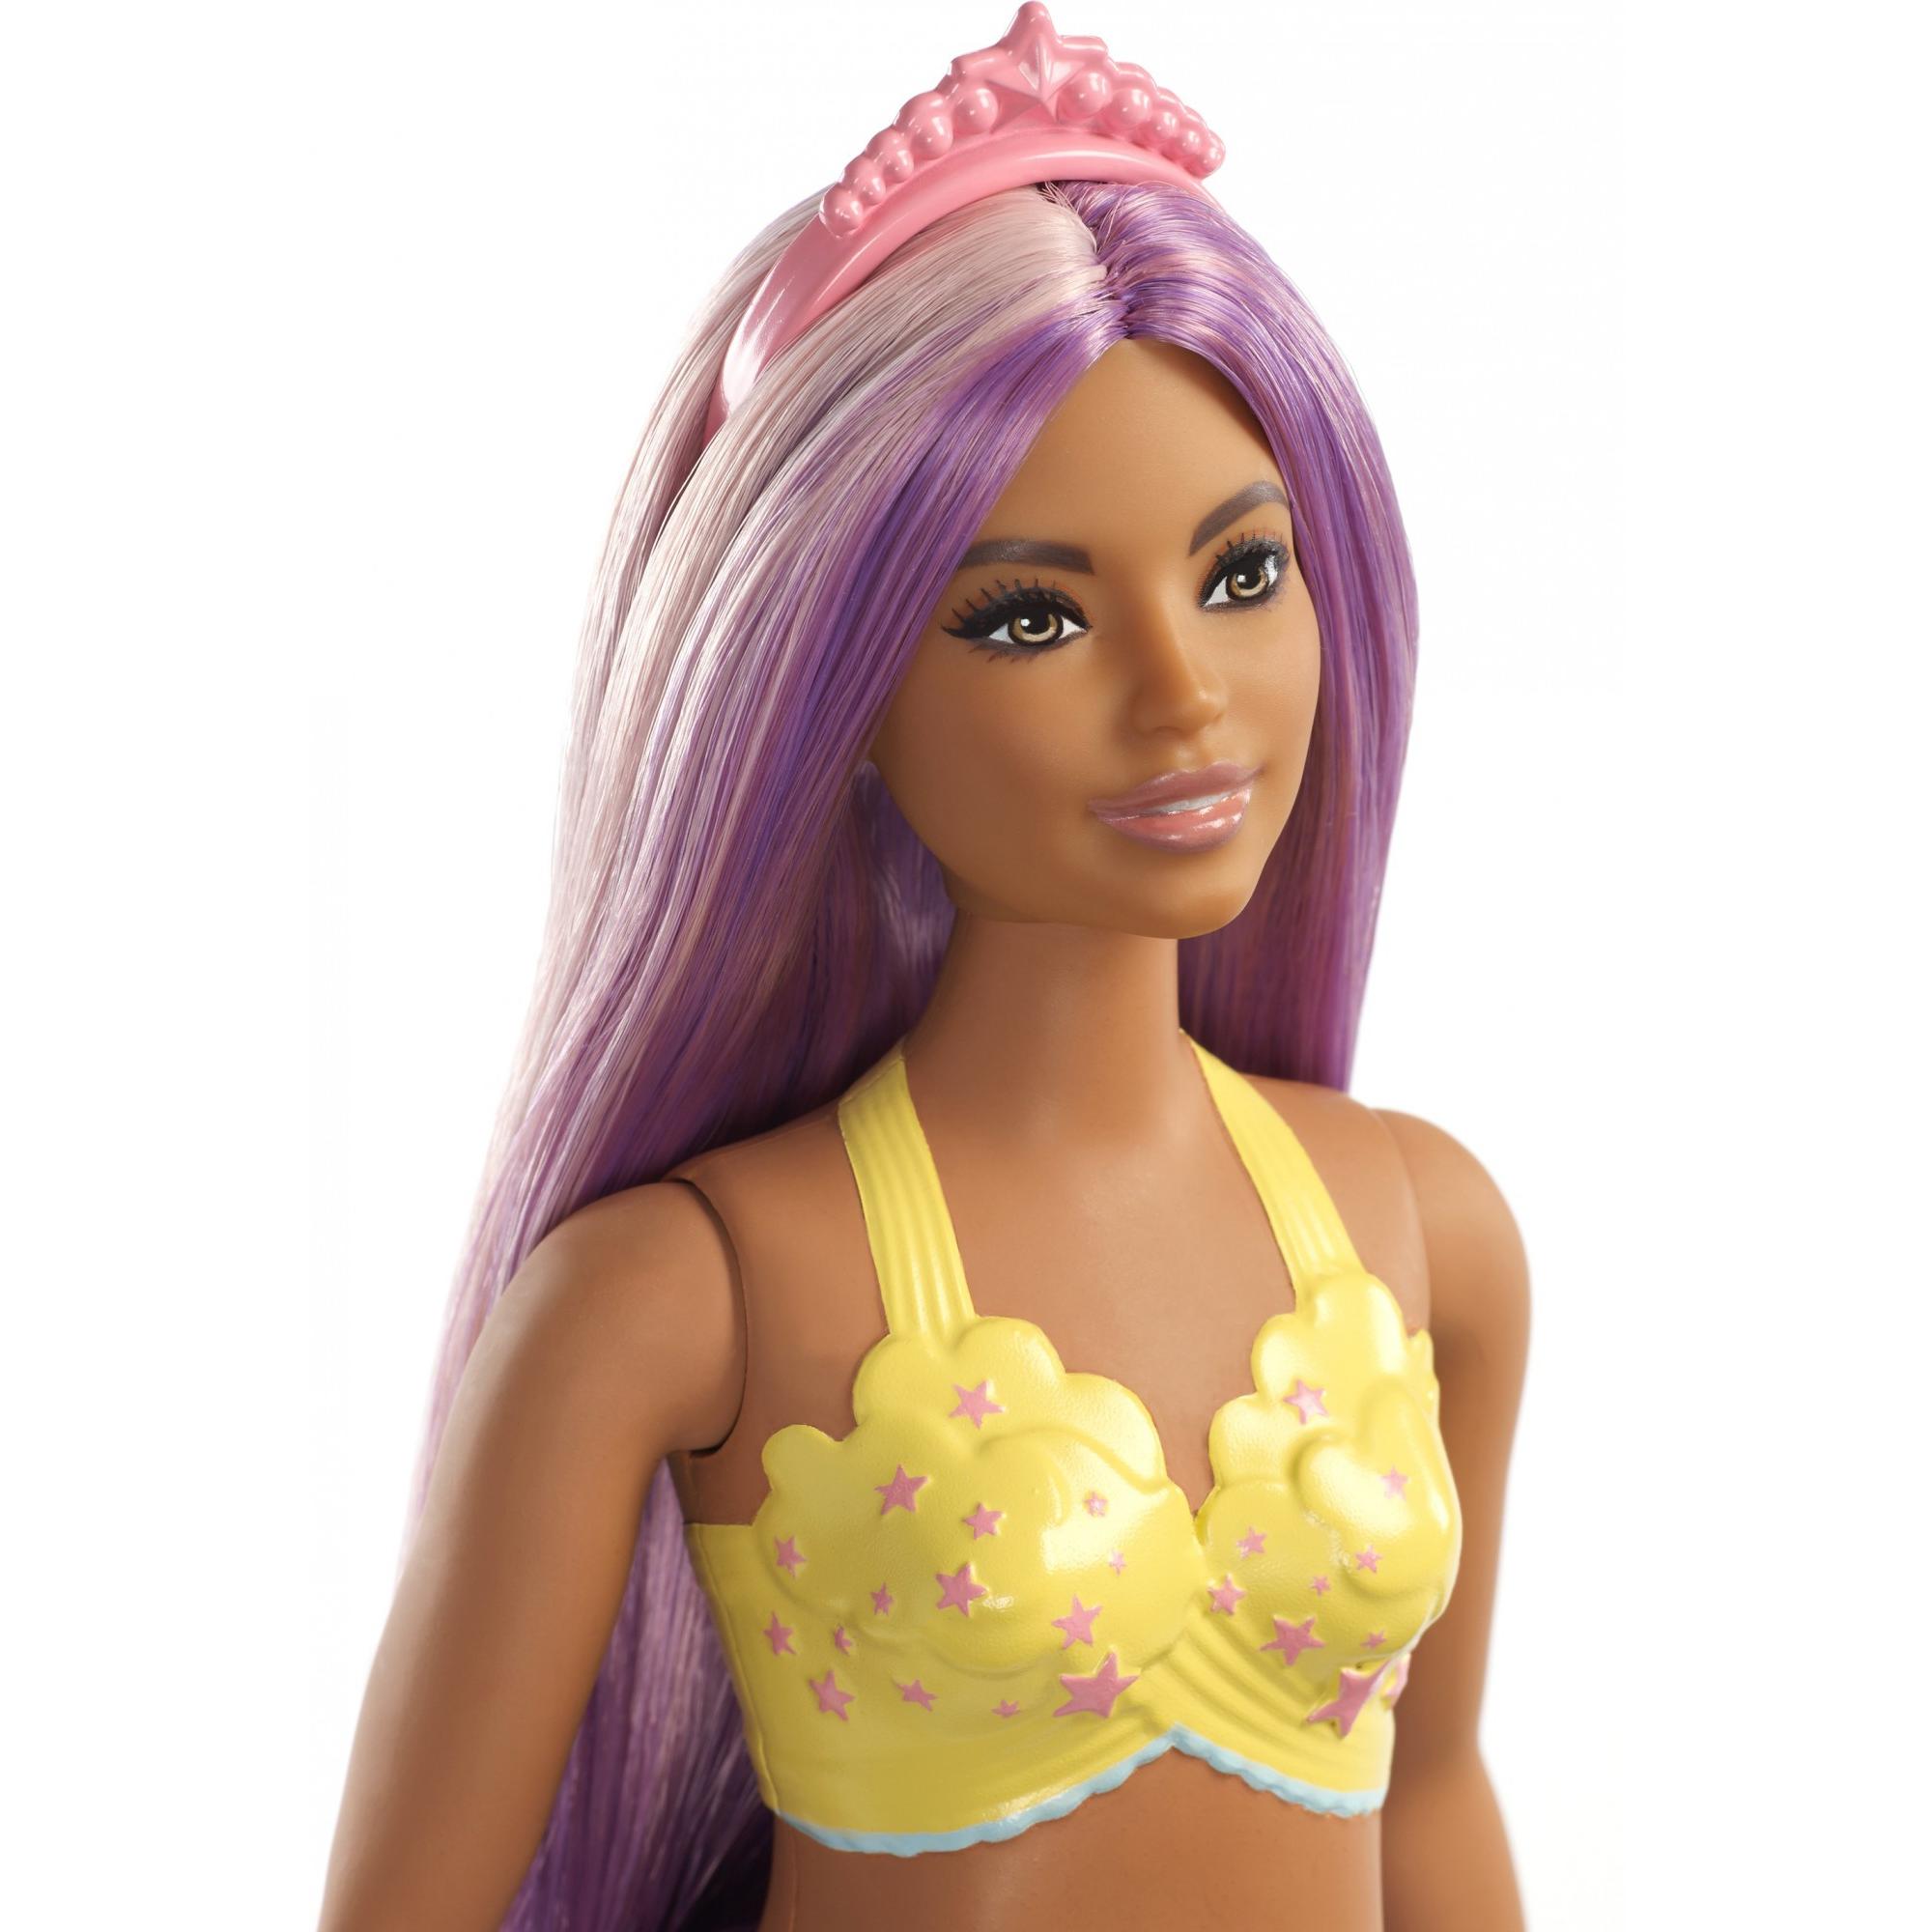 Barbie Dreamtopia Mermaid Doll with Long Purple Streaked Hair - image 4 of 8